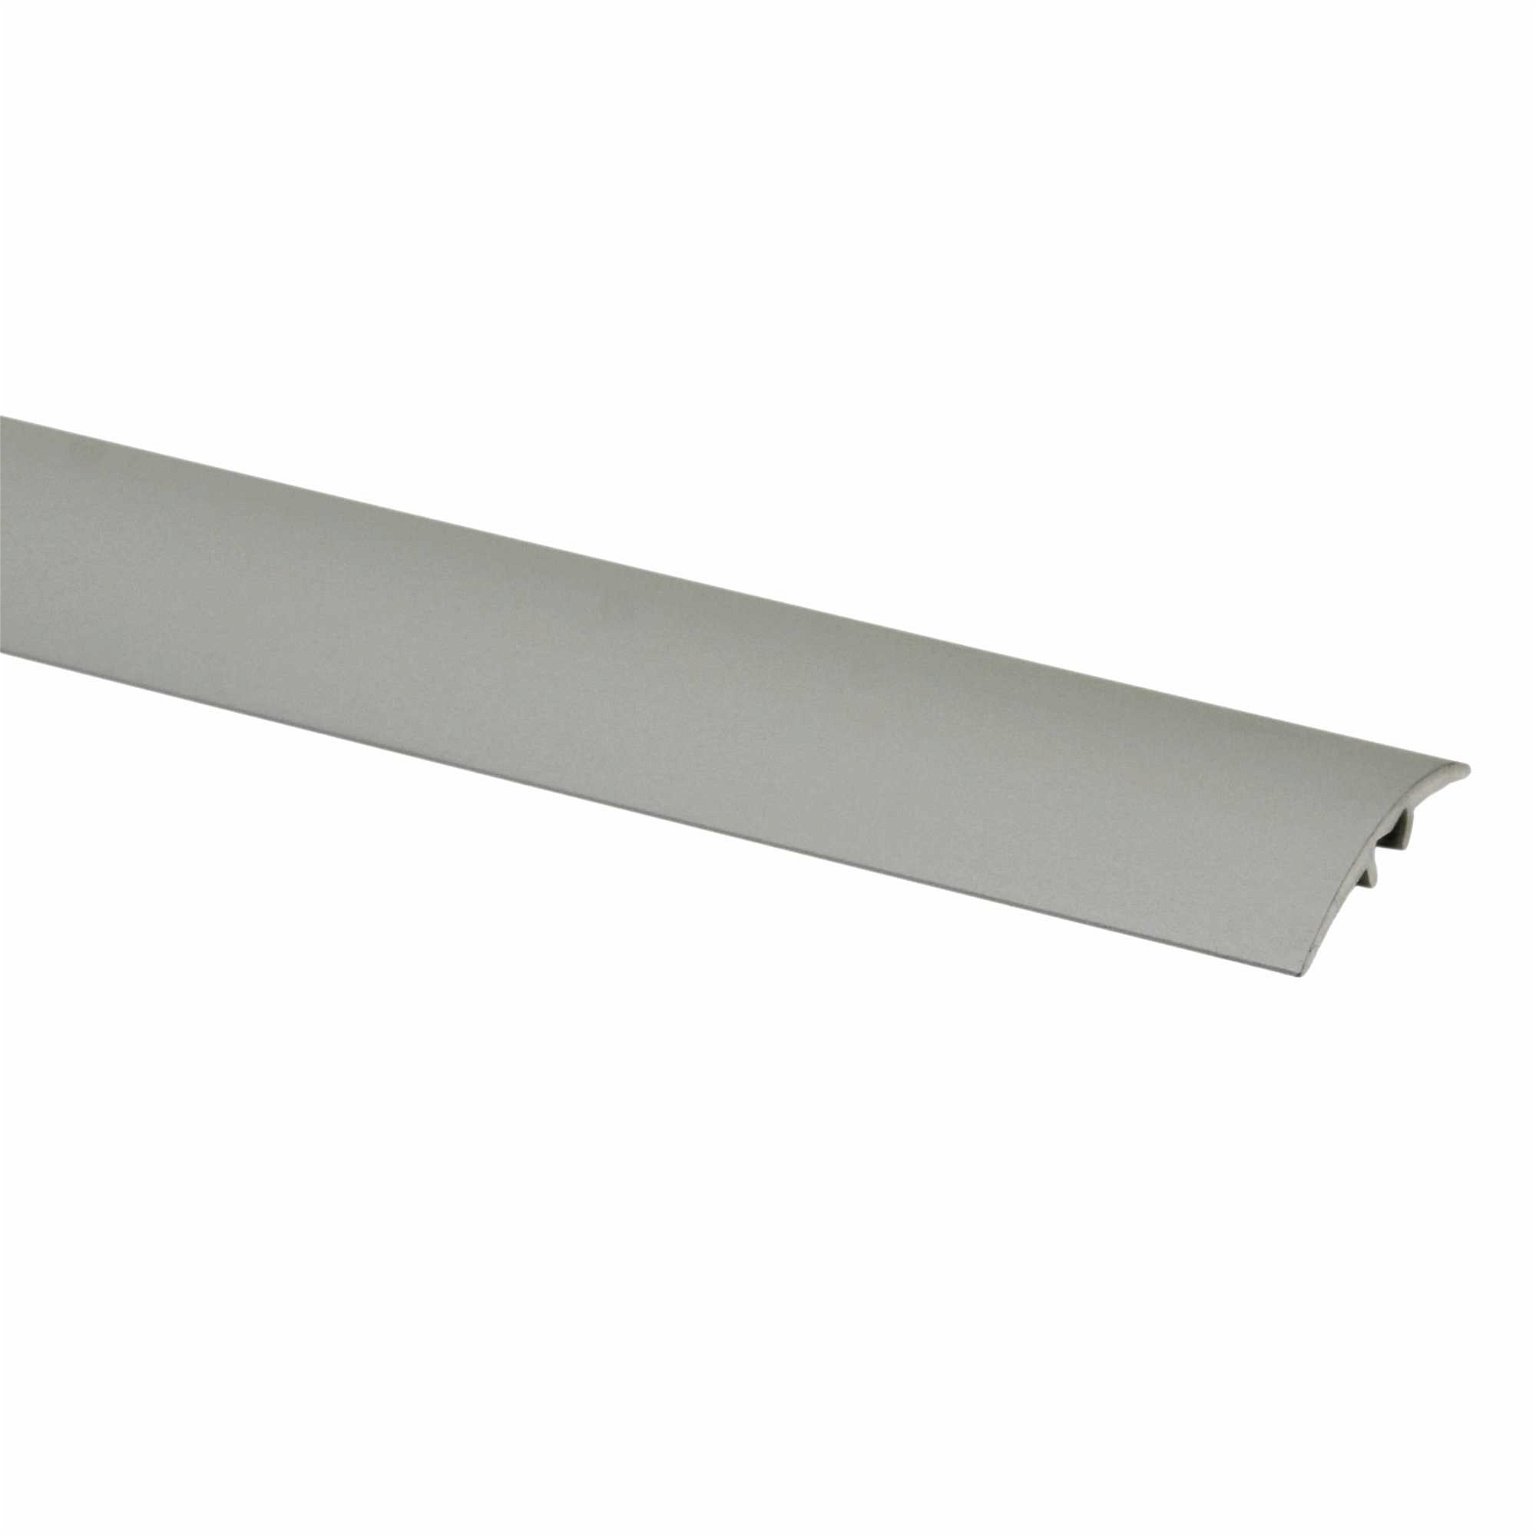 Aliumininė grindų juostelė PR3 A1, sidabro sp., 28 mm pločio, 93 cm ilgio